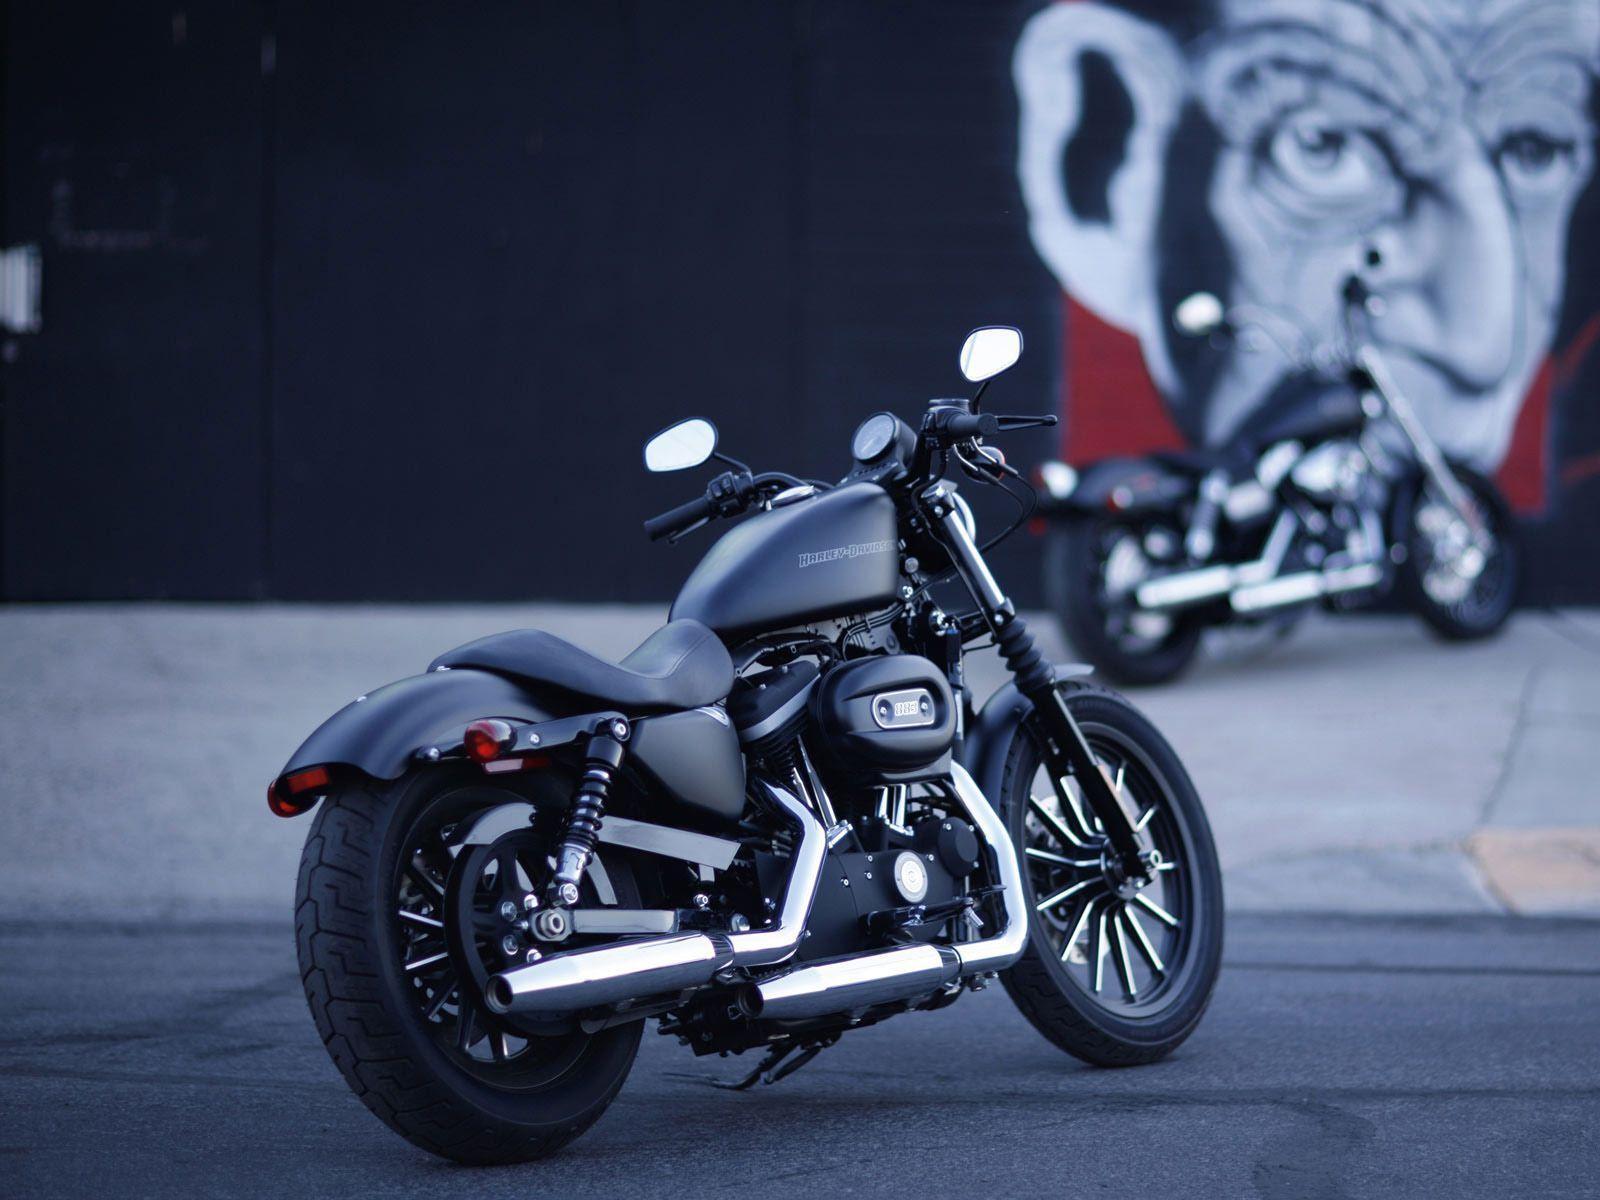 Harley Davidson Wallpaper Free